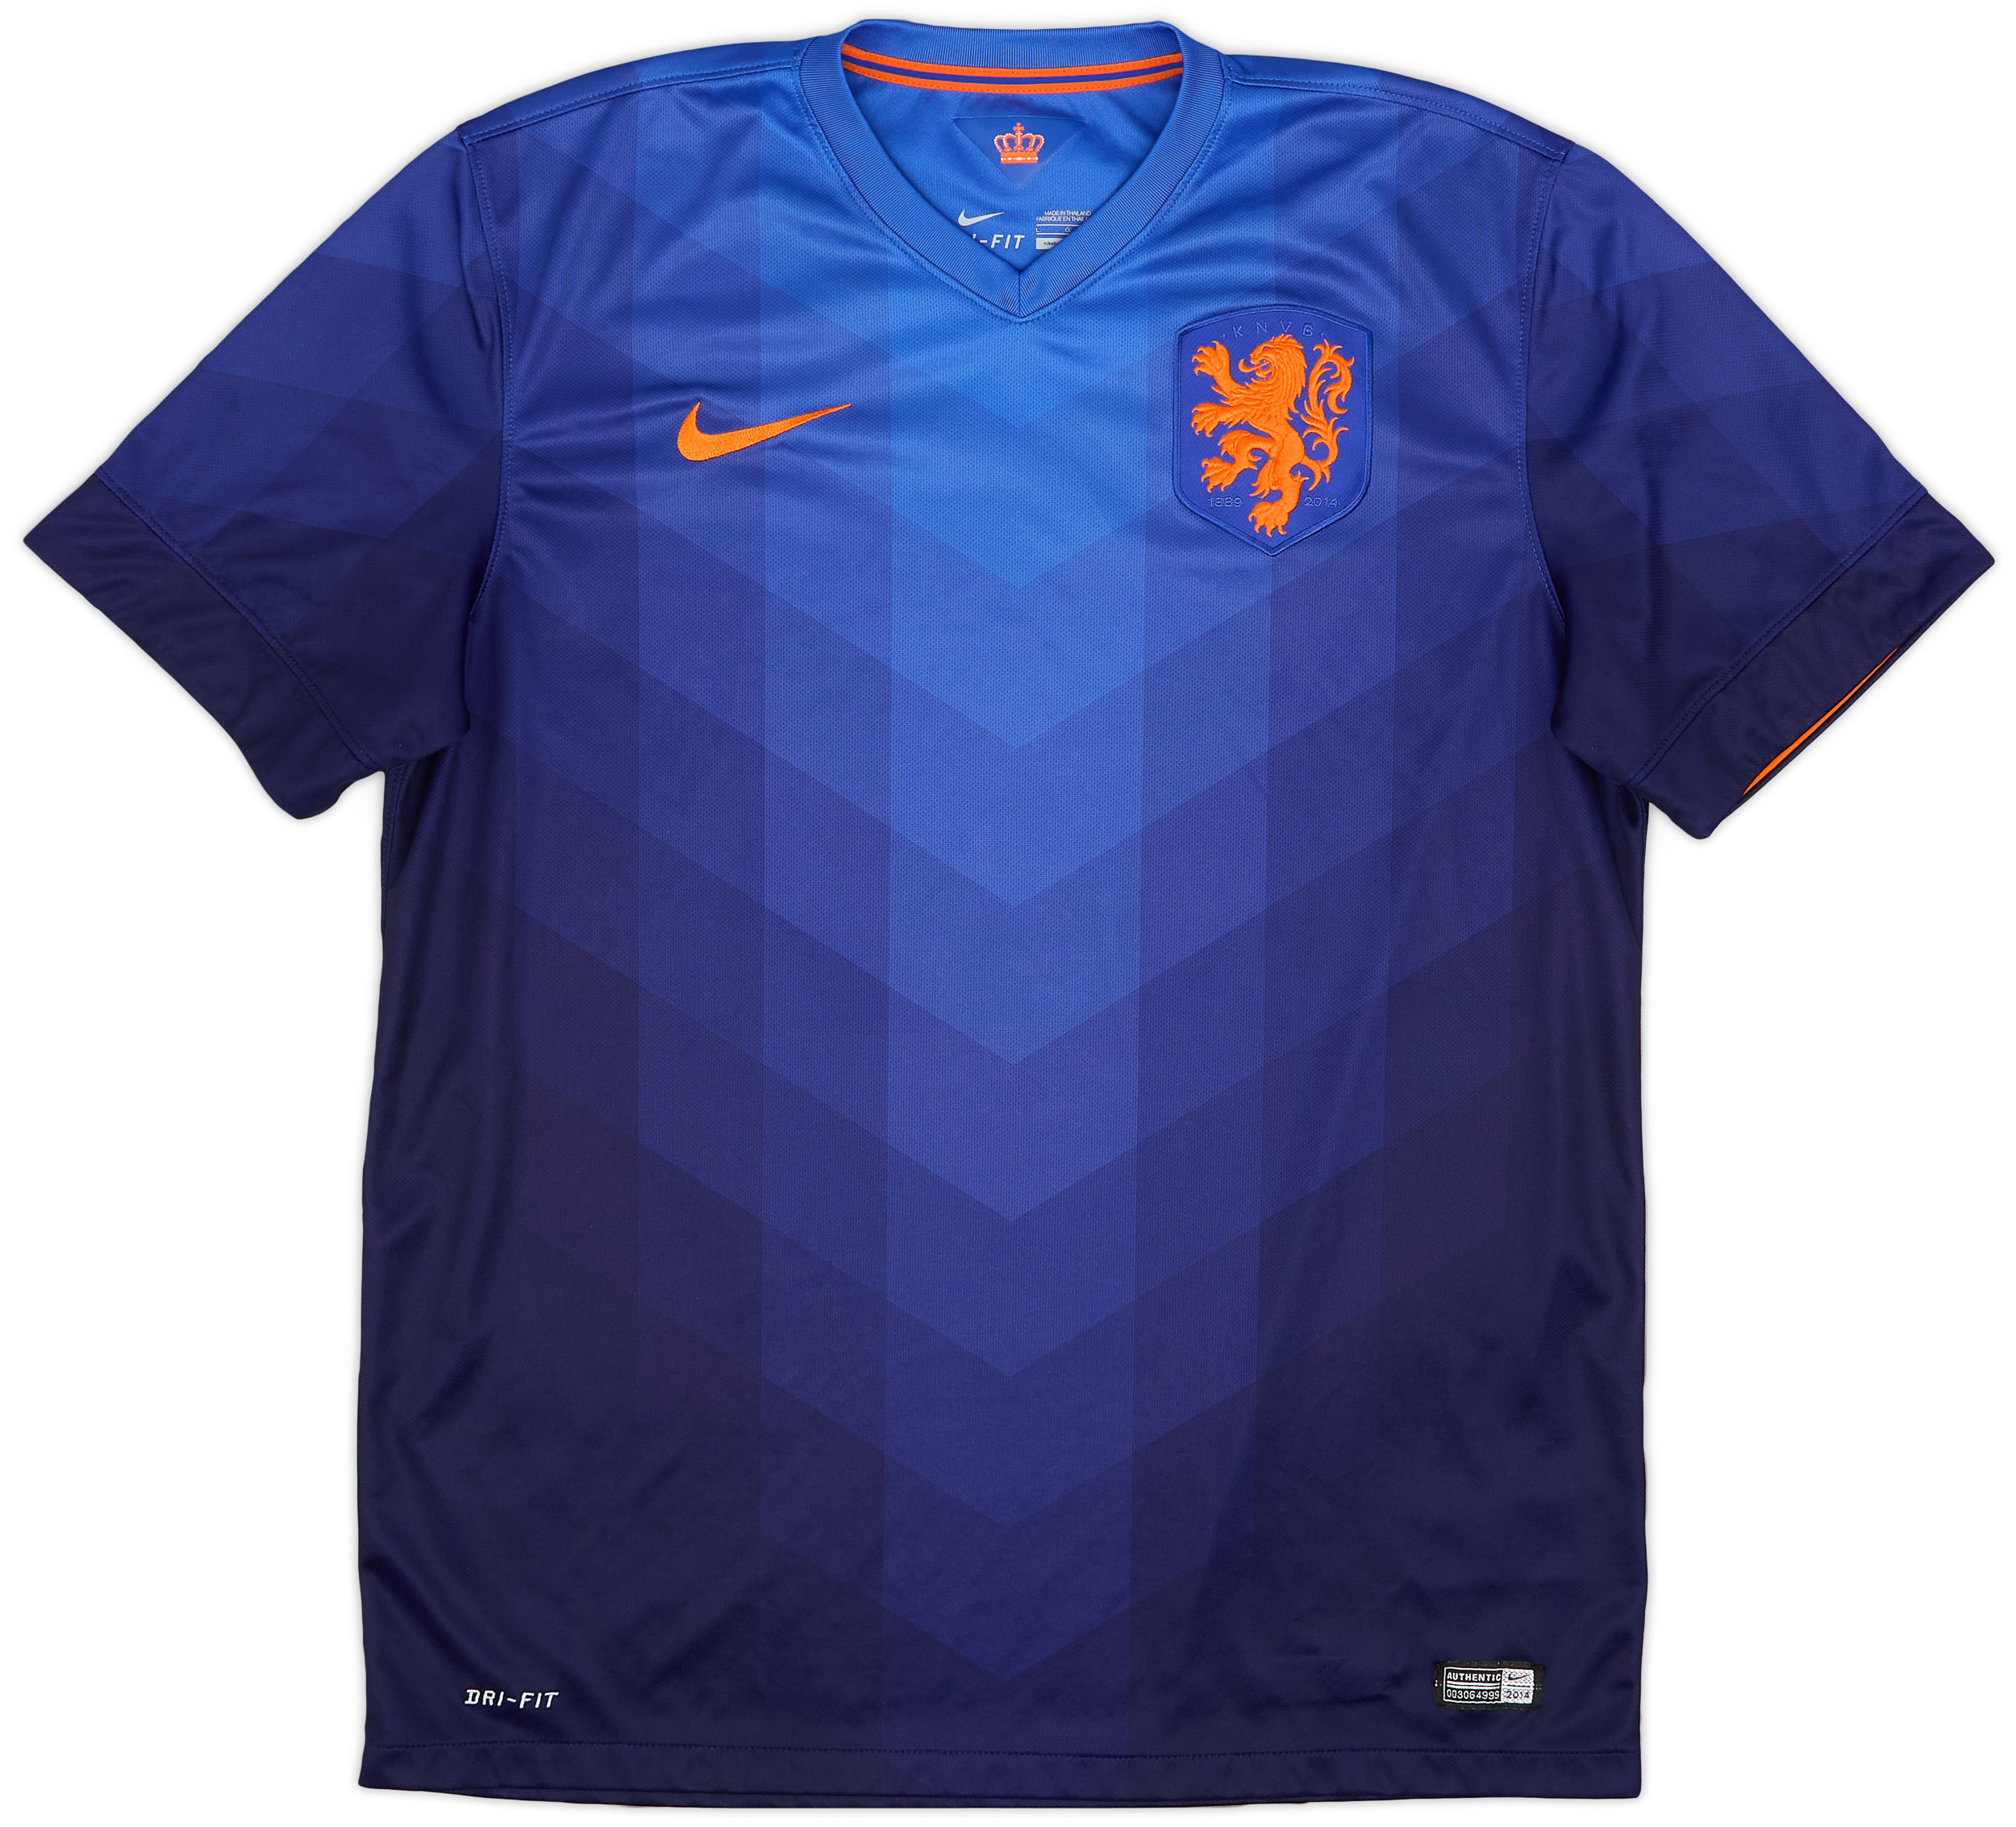 2014-15 Netherlands Away Shirt - 10/10 - ()